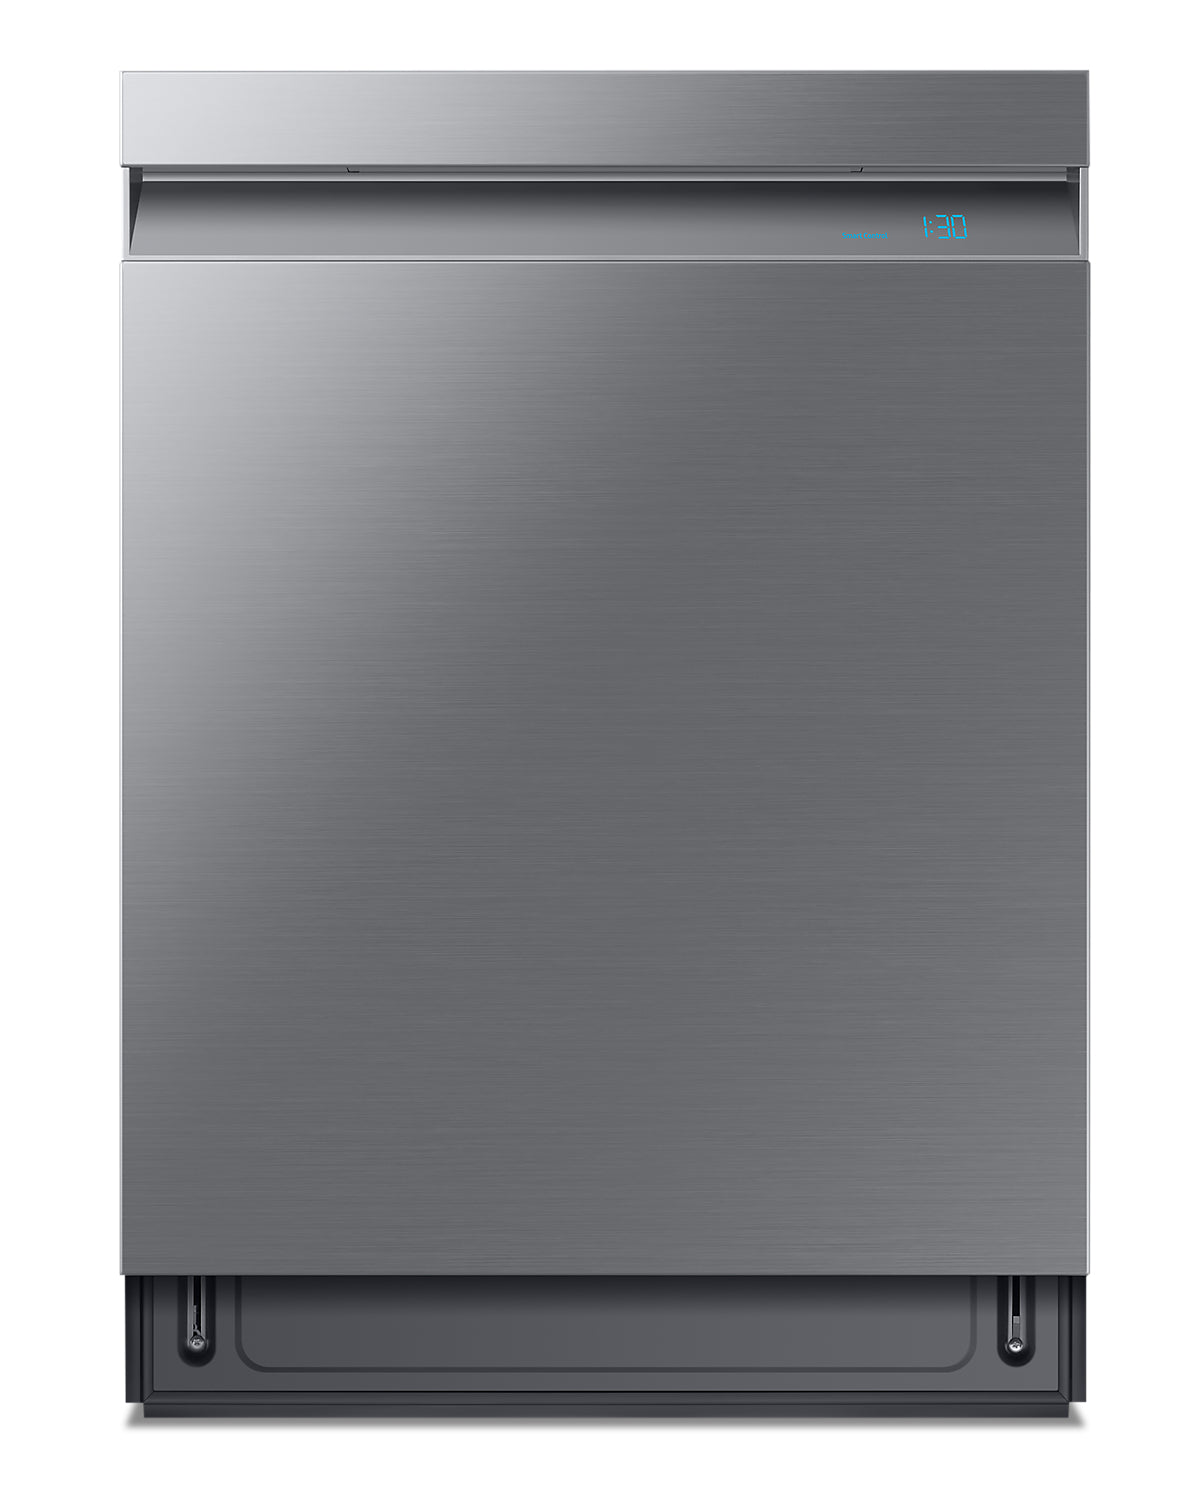 Dishwasher with AquaBlast™ Technology 